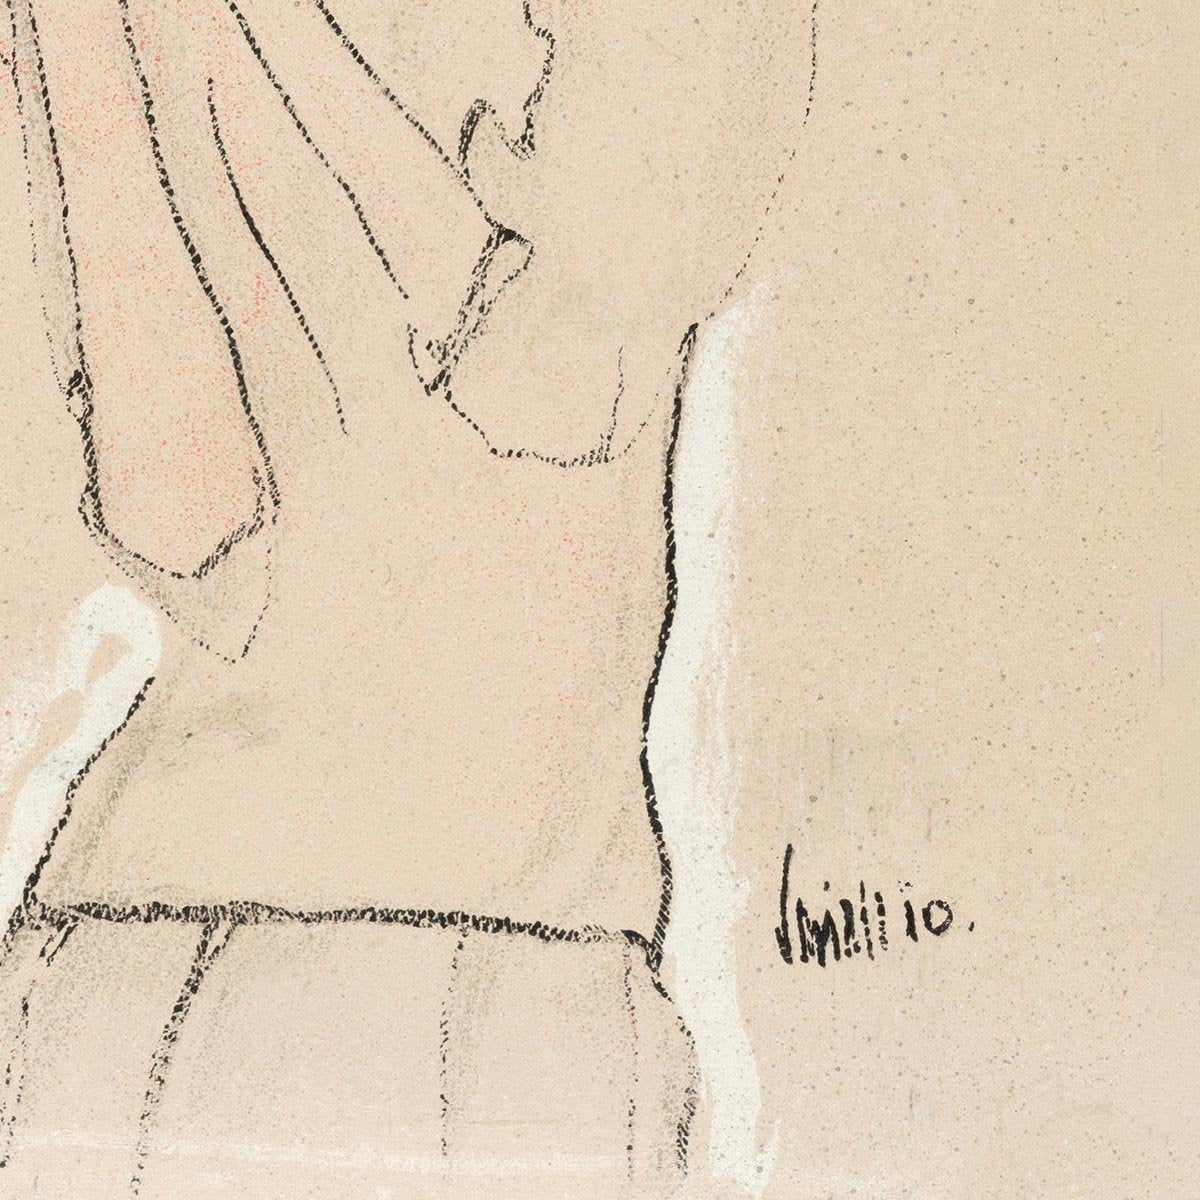 Portrait of a Woman by Egon Schiele